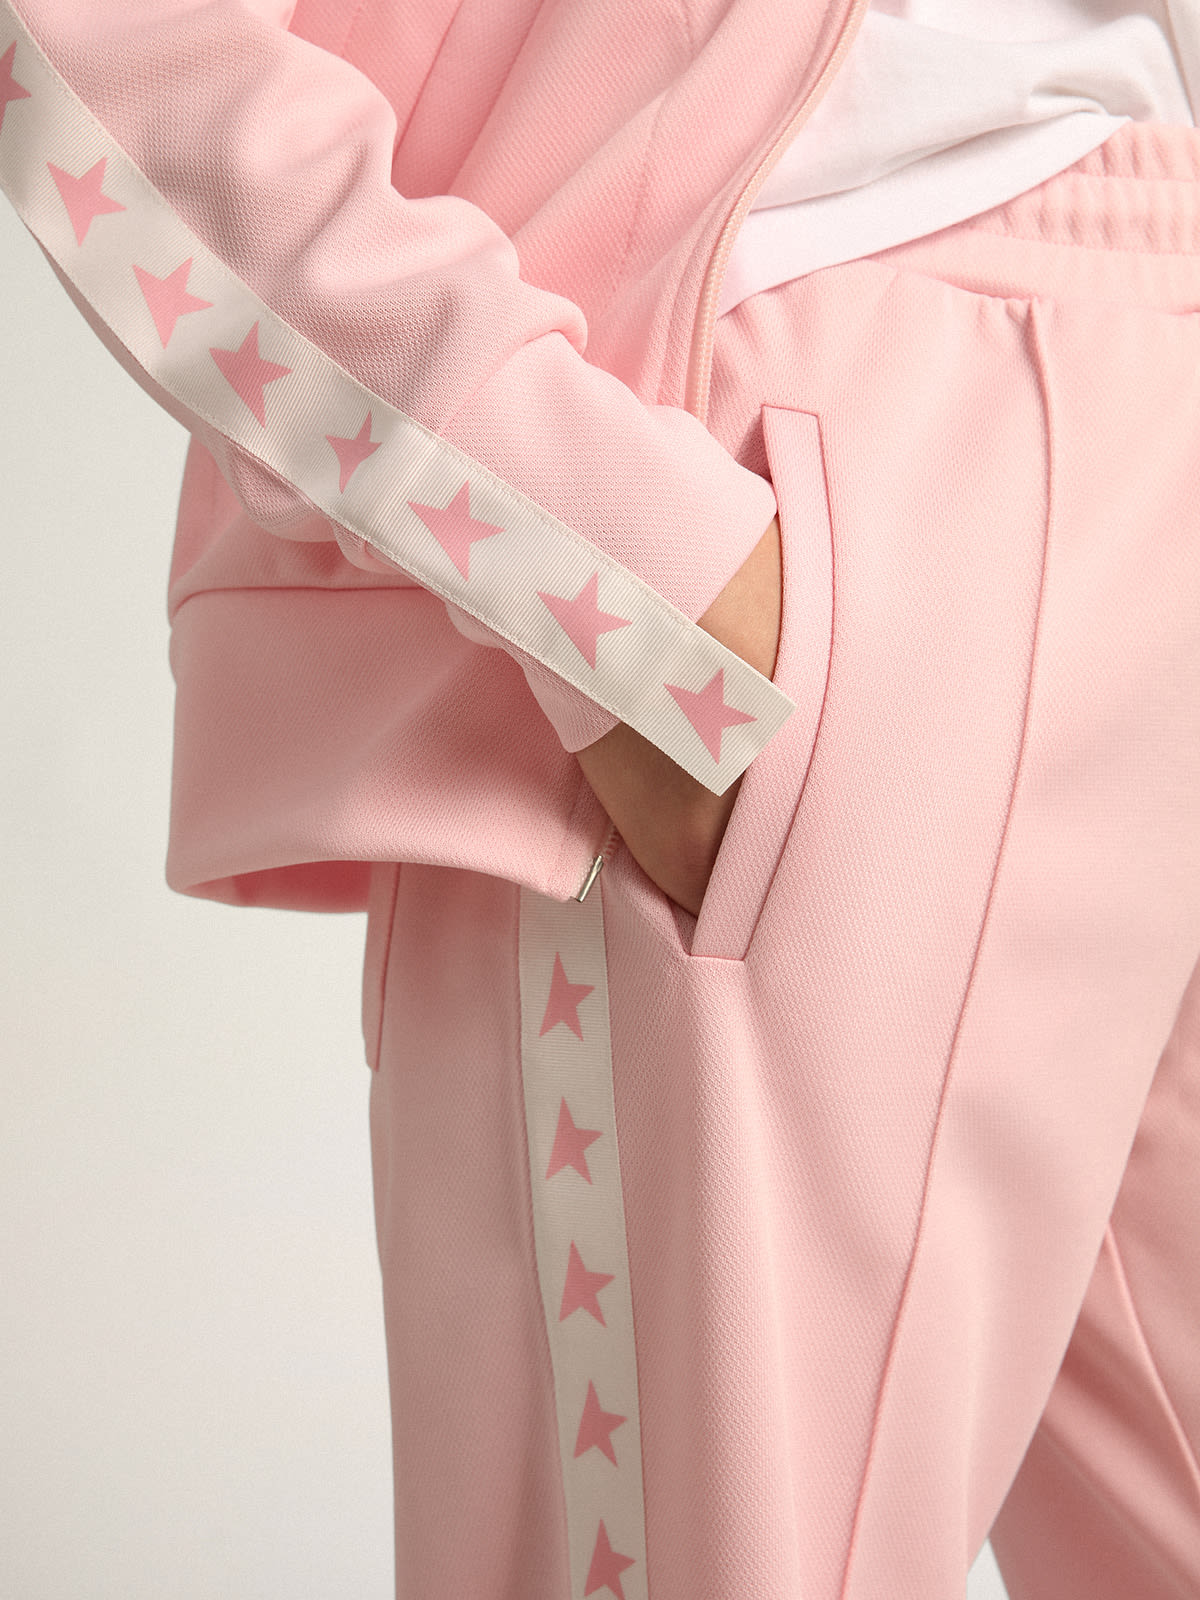 Golden Goose - Sweat-shirt avec fermeture à glissière Denise collection Star de couleur rose avec bande blanche et étoiles roses contrastées in 